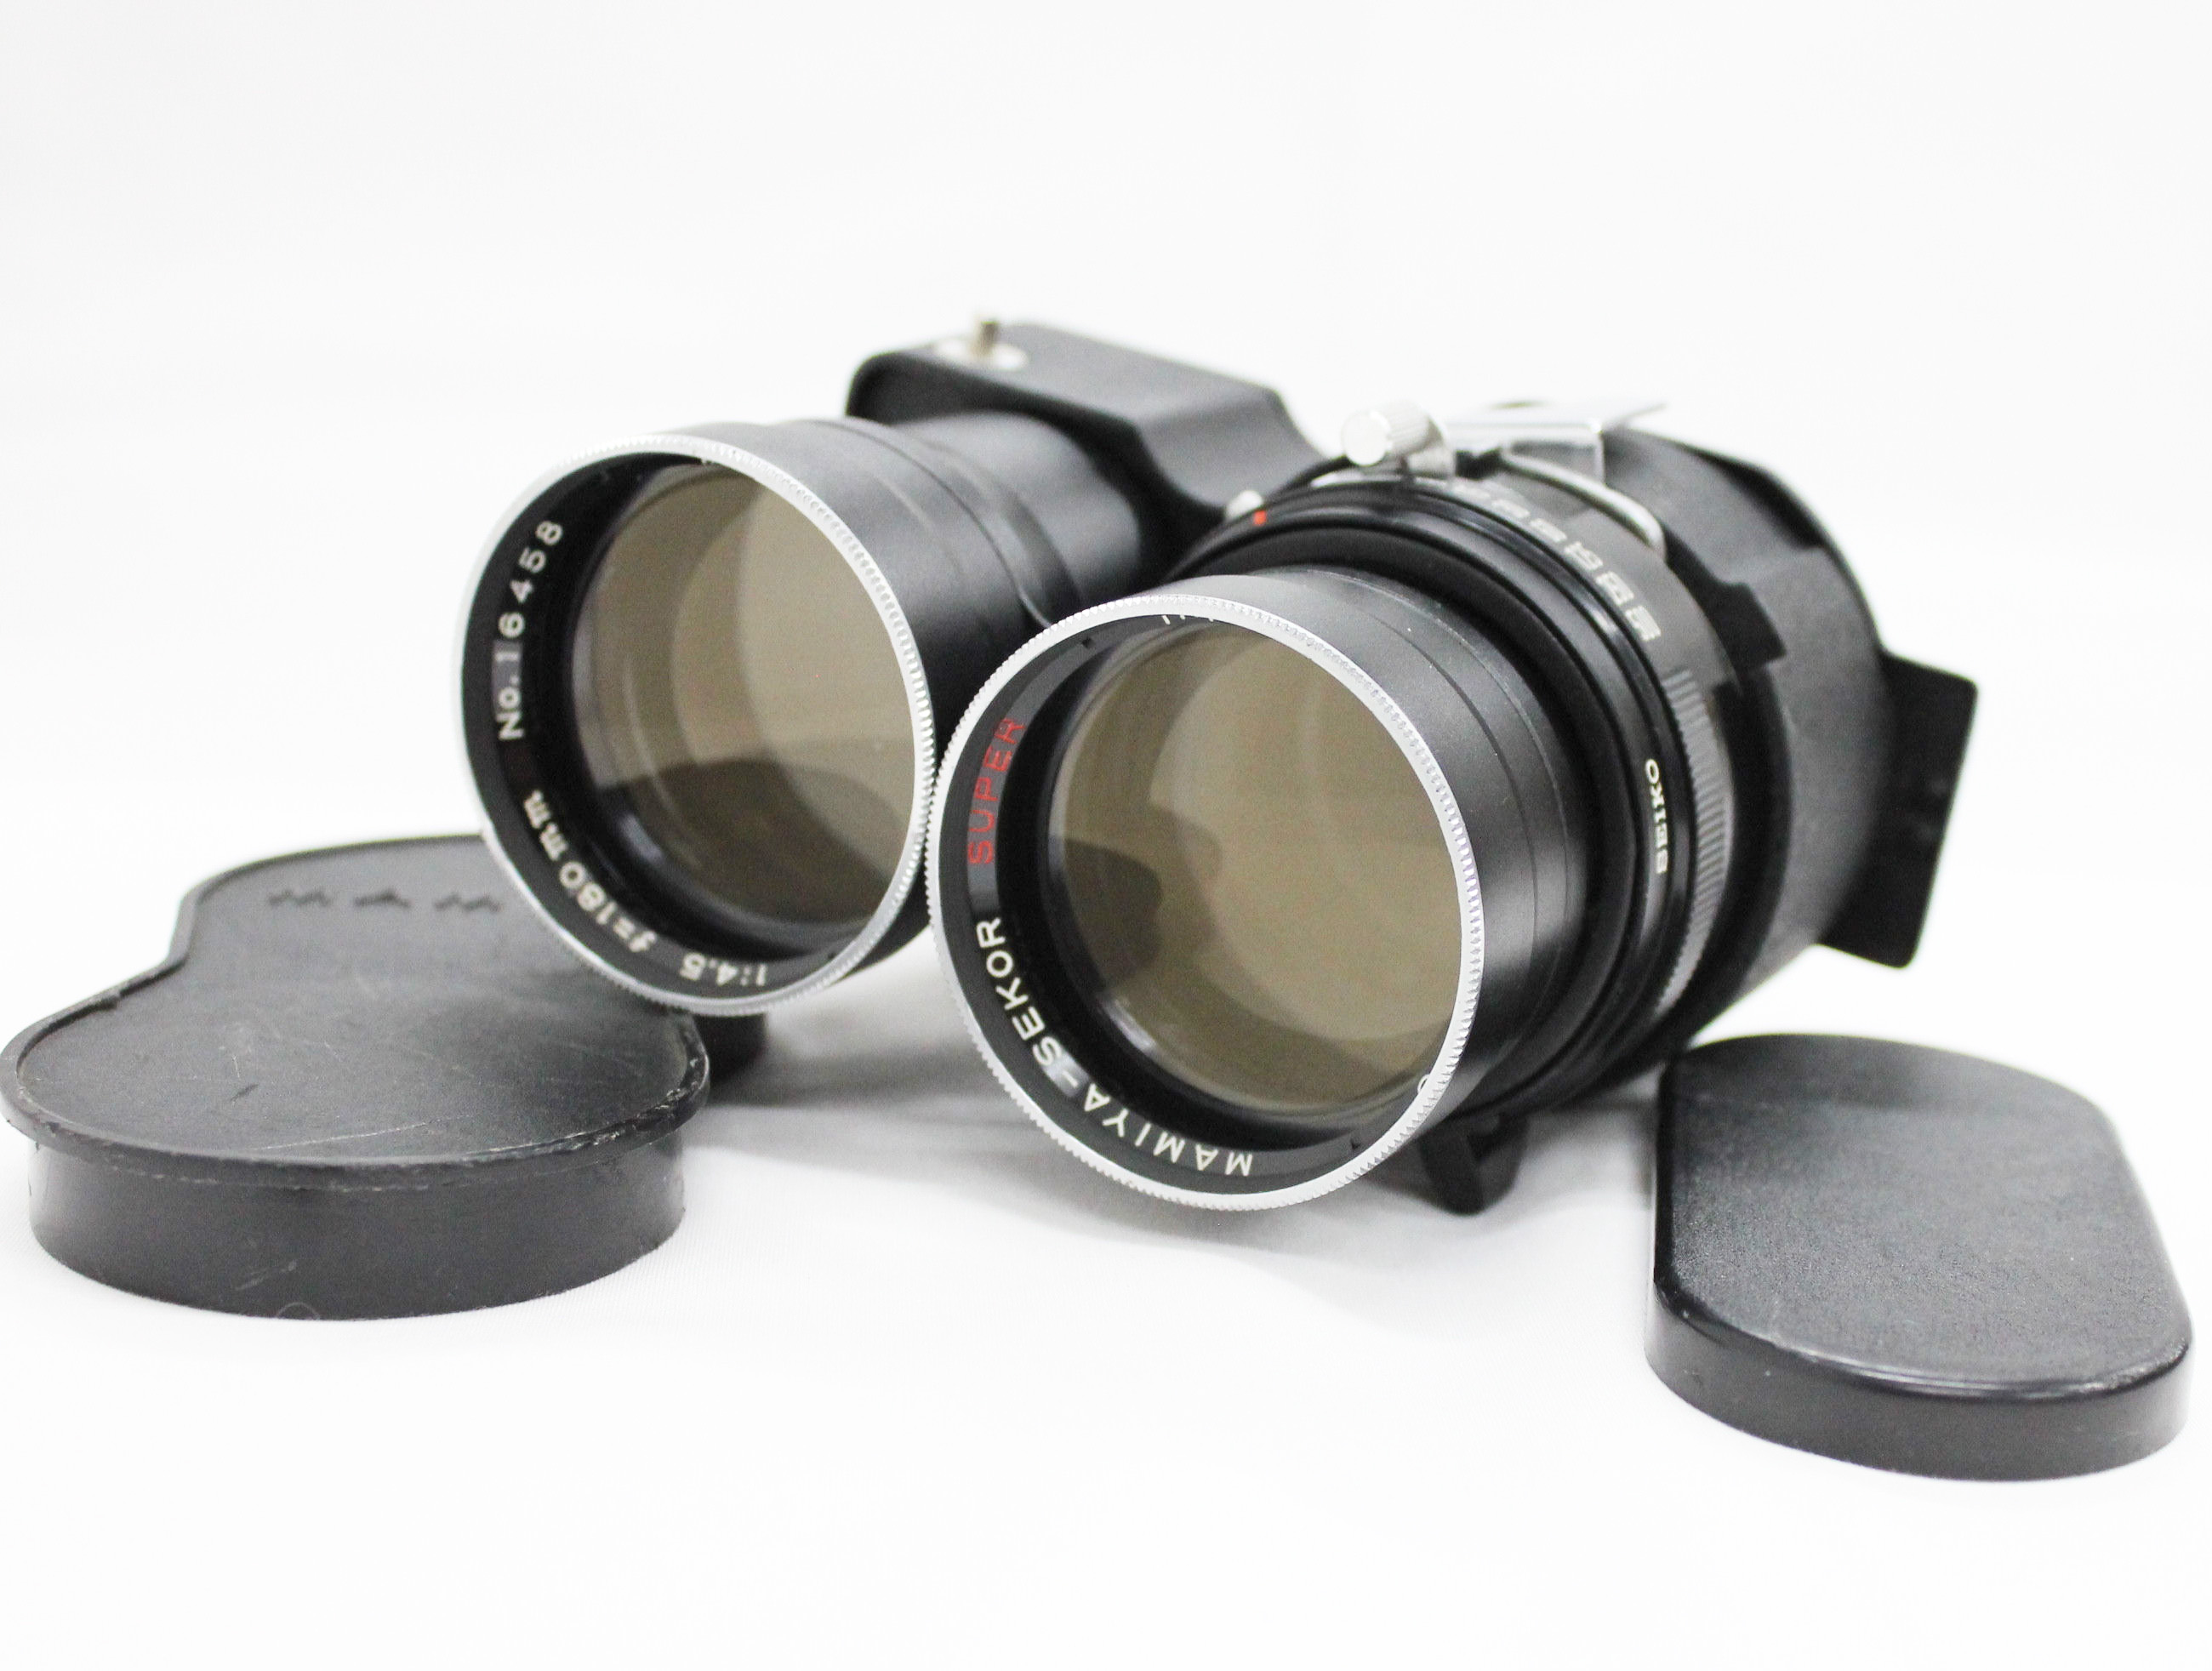 [Excellent+++++] Mamiya Sekor Super 180mm F/4.5 TLR Lens for C3 C33 C220 C330 from Japan